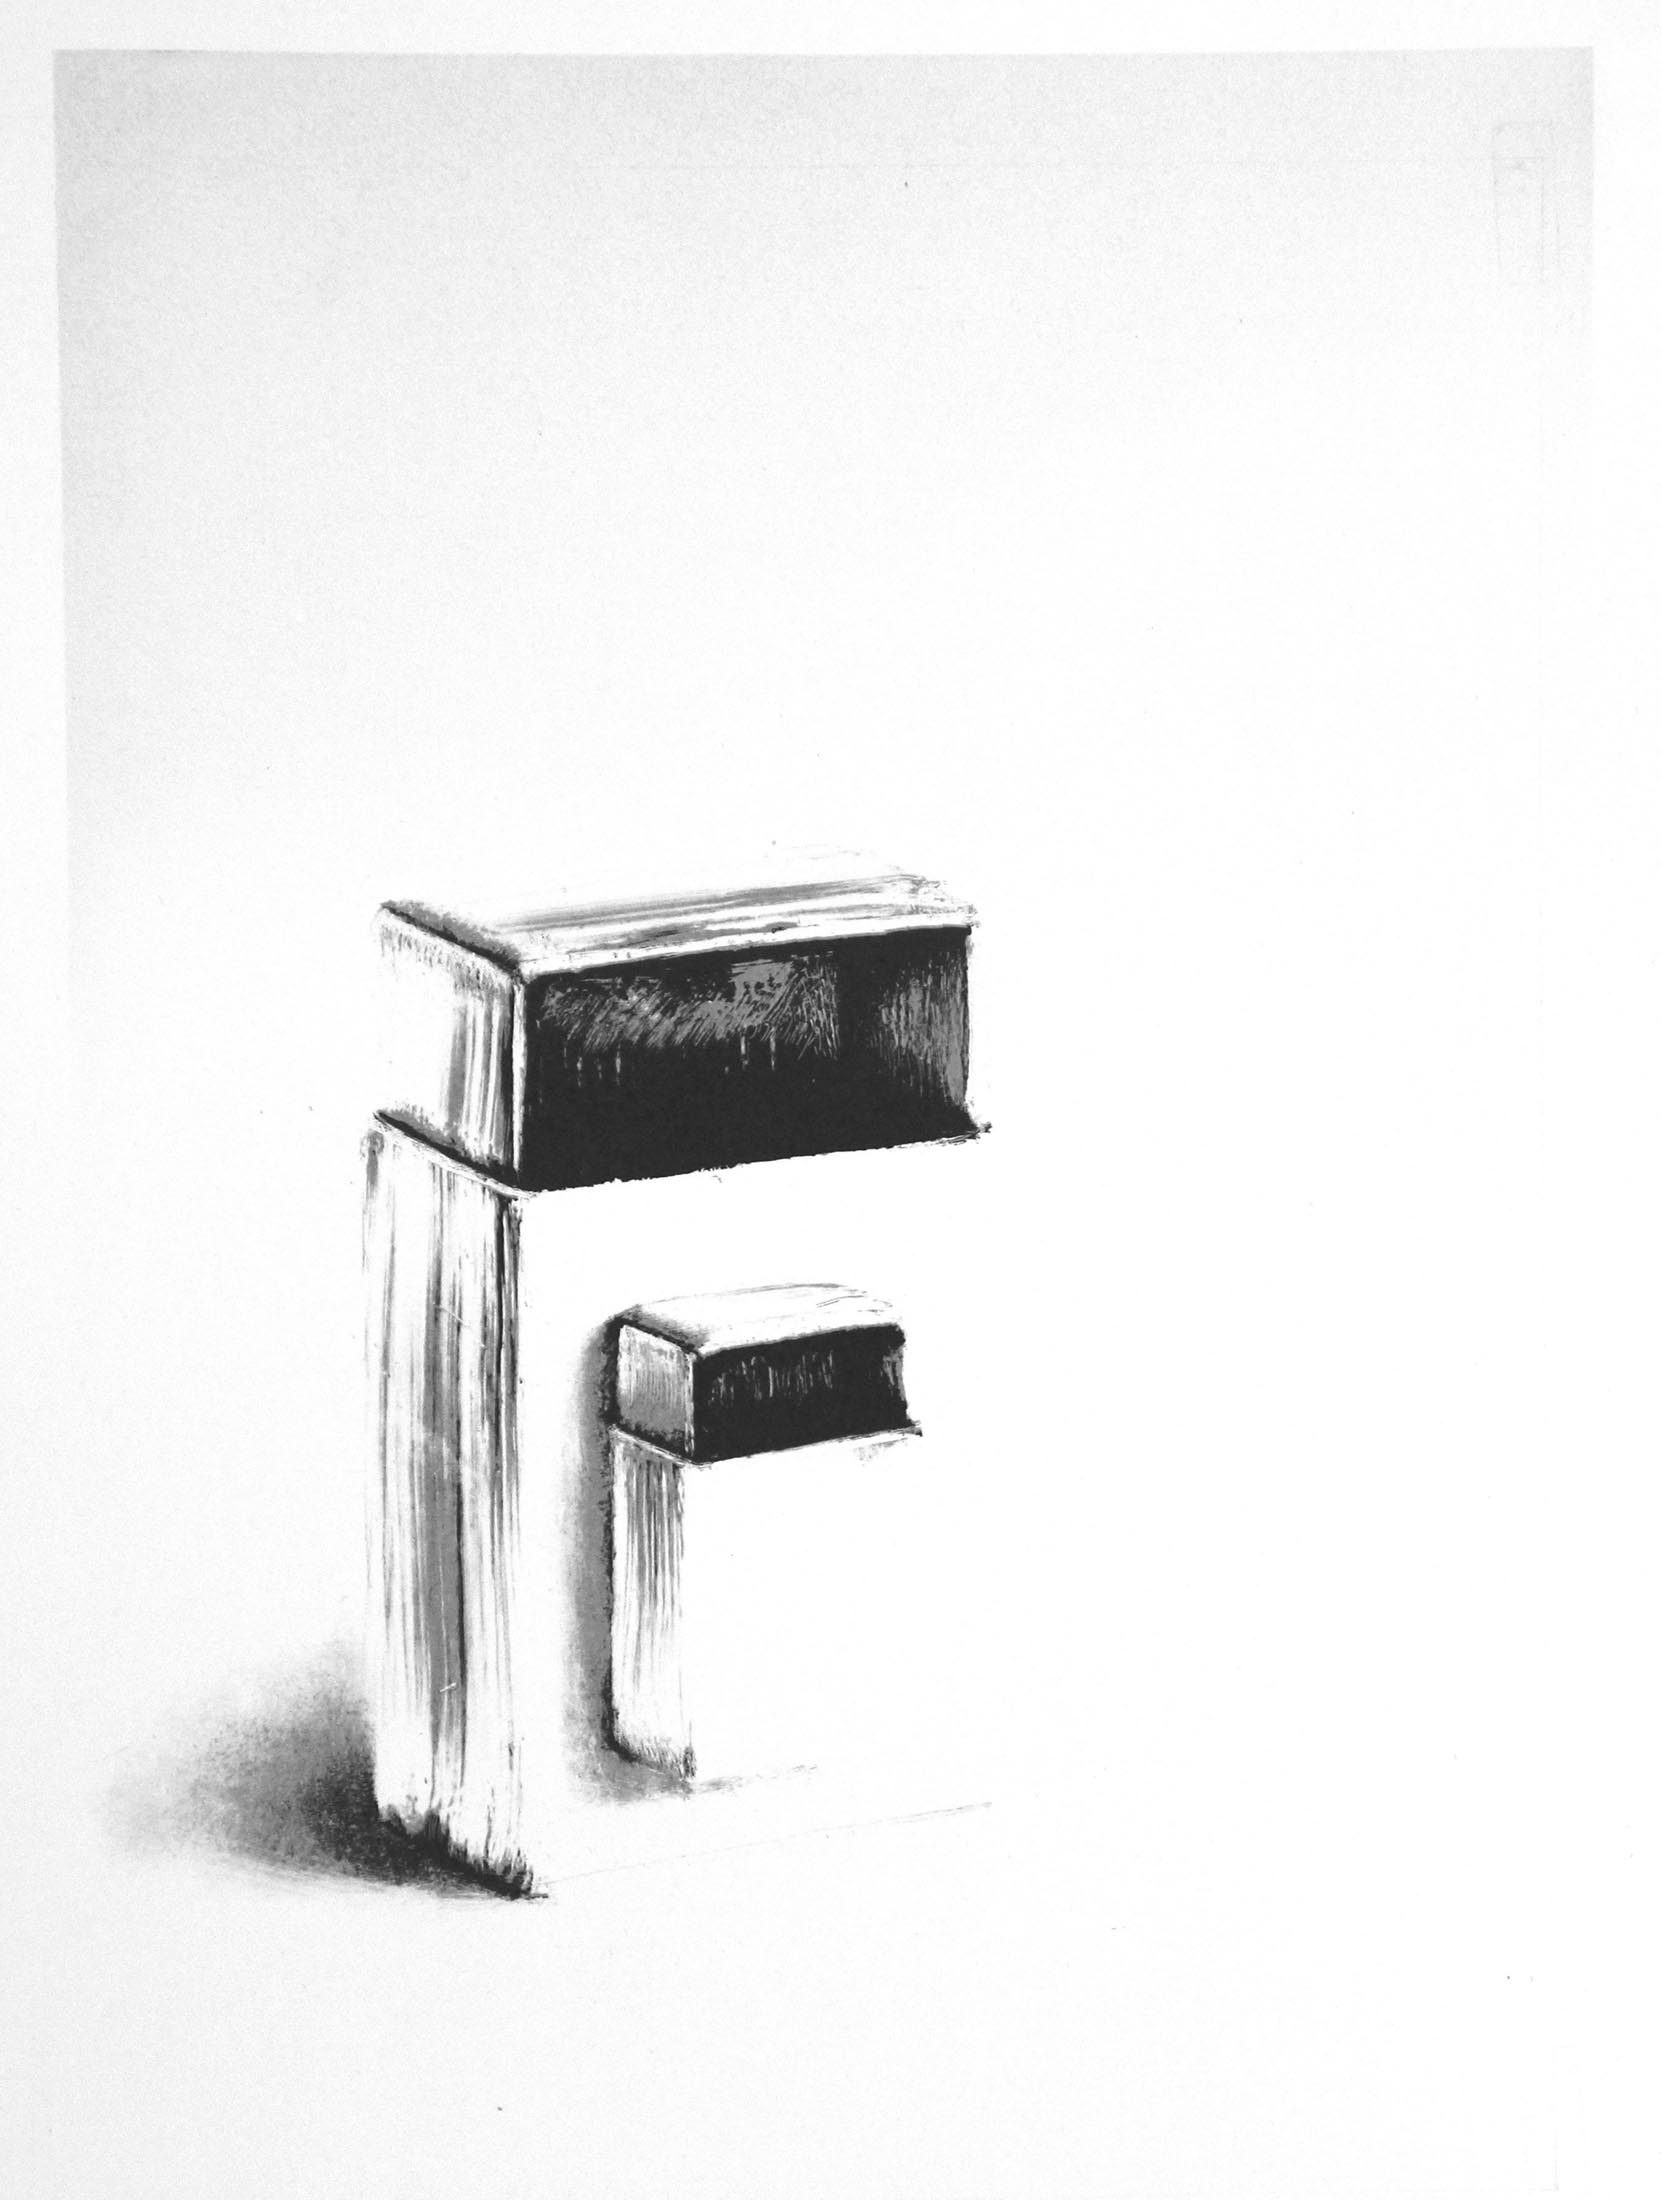 Gross und Klein (Schachteln), 2019
Flachdruck (Duplex), Hochdruck
Auflage 9
32 x 23 cm
Druckwerkstatt, Lenzburg